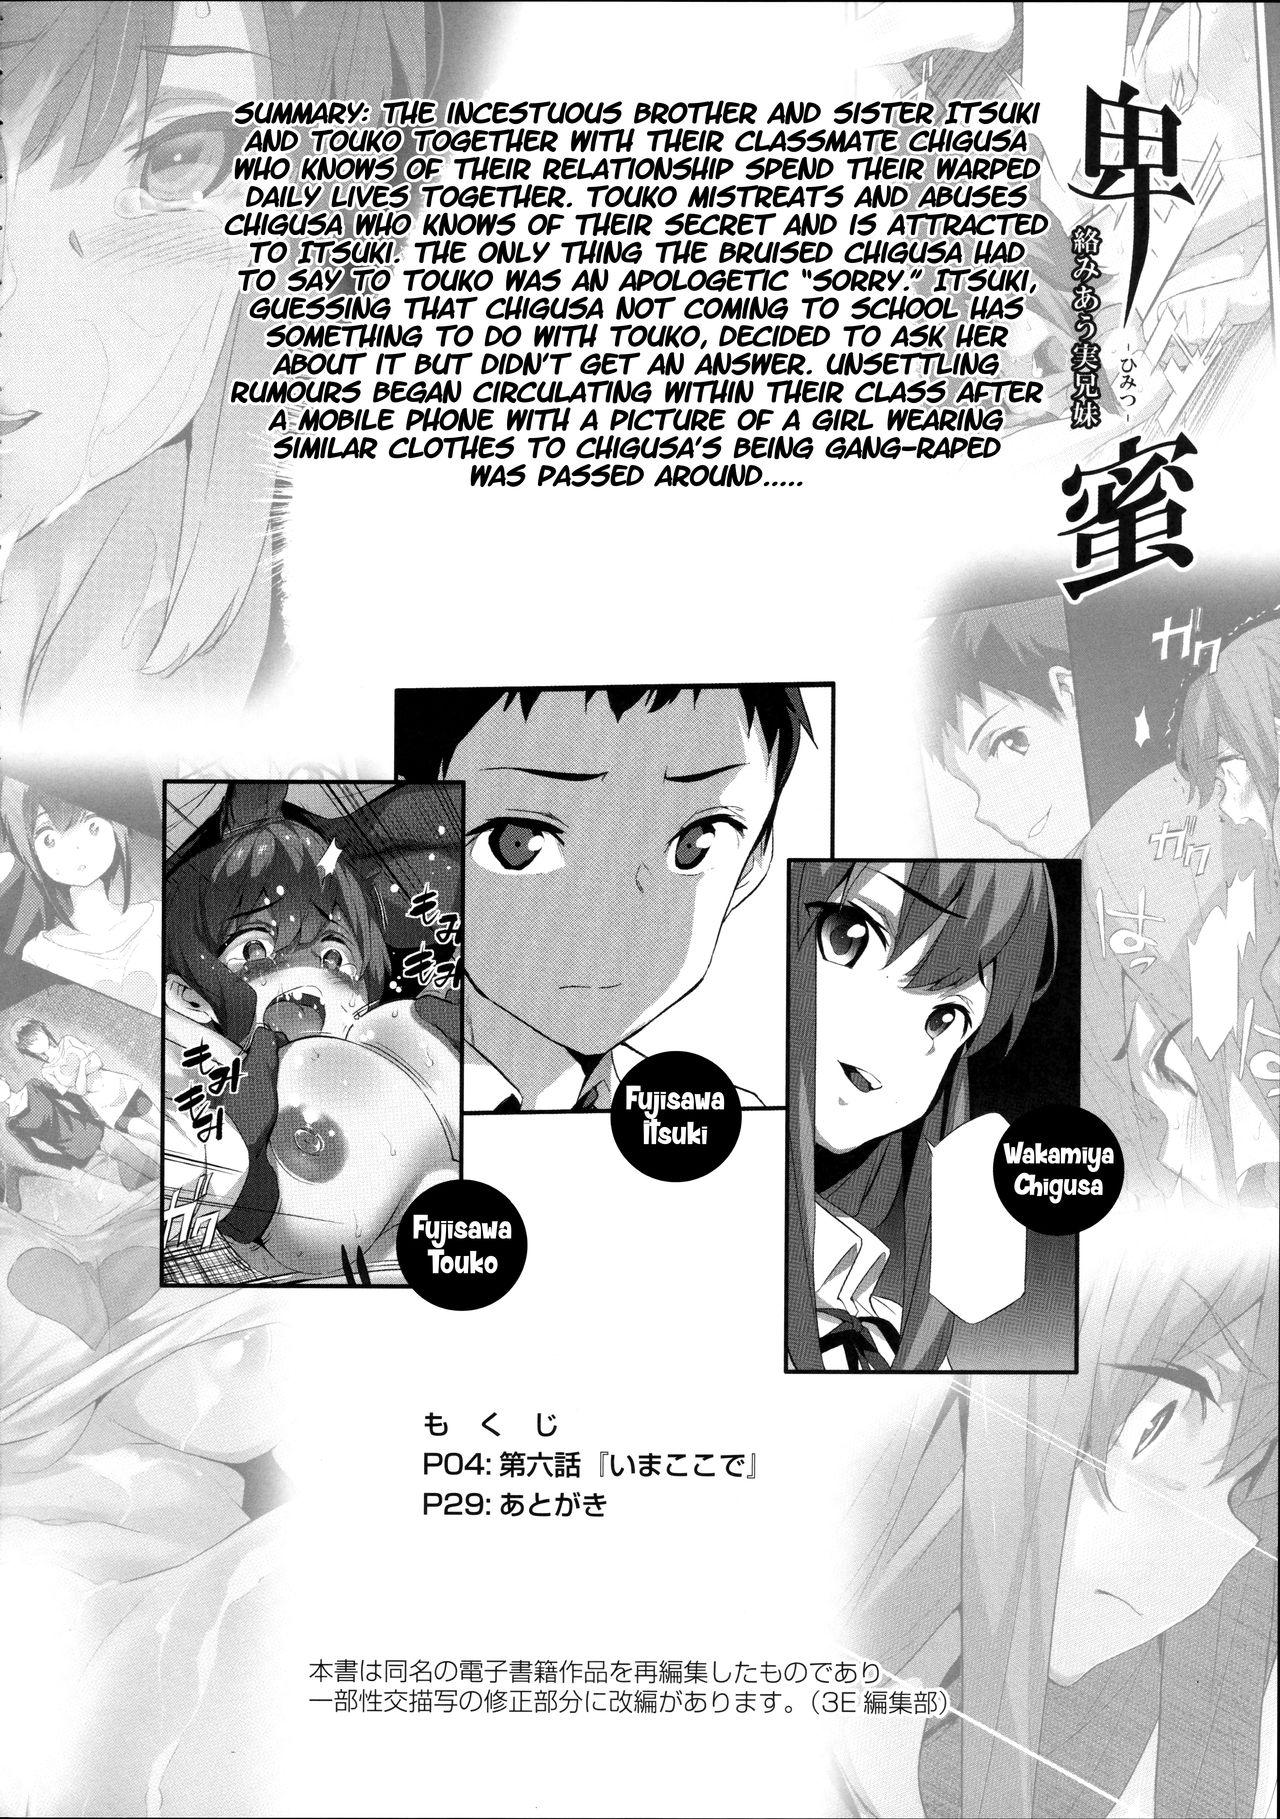 Himitsu 06 "Ima koko de" | Secret 6 - The entanglement of a real brother and sister 2